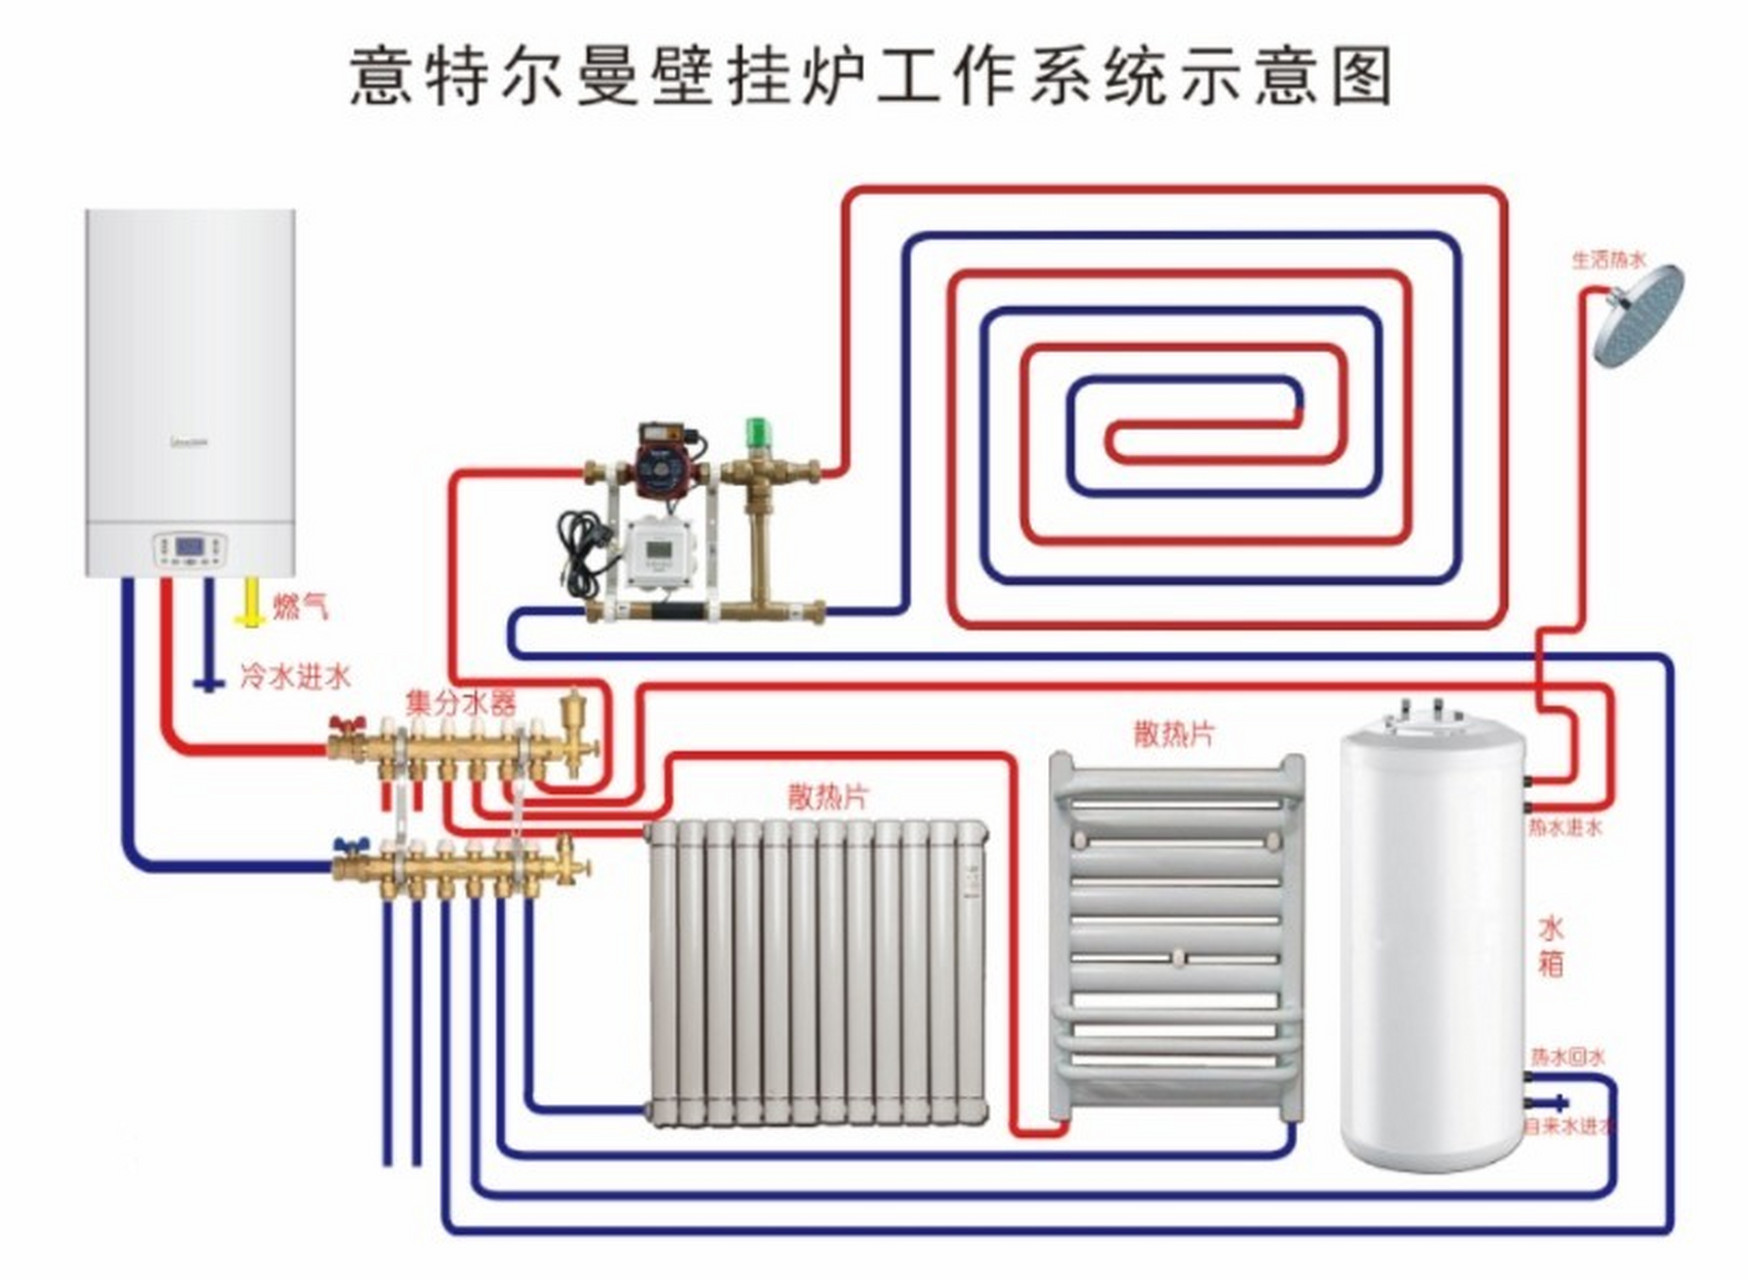 壁挂炉安装详解教程 1,安装条件 首先,用户家里的供暖系统必须是一个